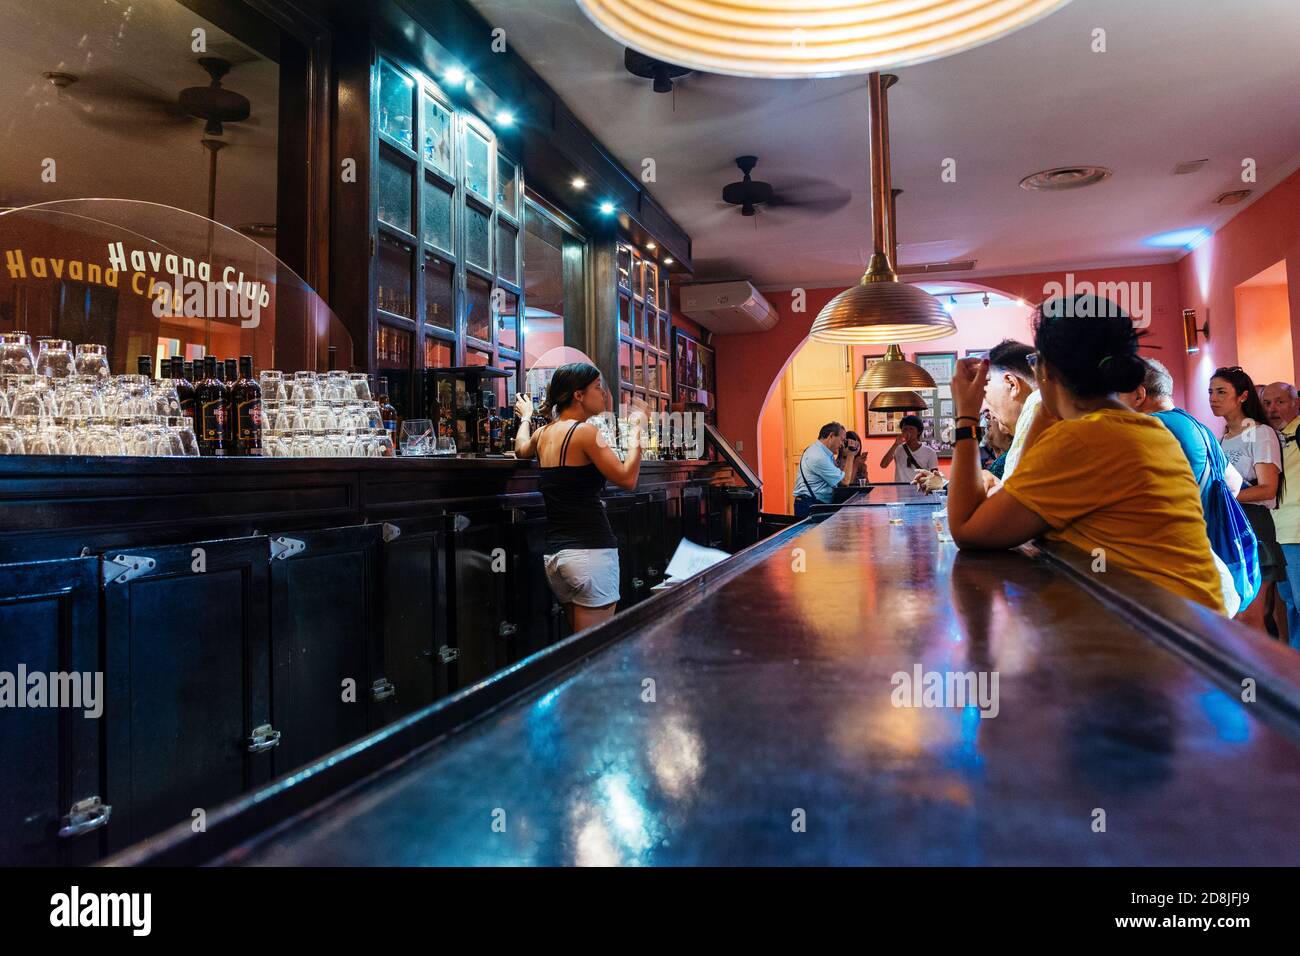 Holzbar, die an die Bars erinnert, die Havanna in den 1930er Jahren berühmt machten. Das Rummuseum der Stiftung Havana Club. La Habana - Stockfoto